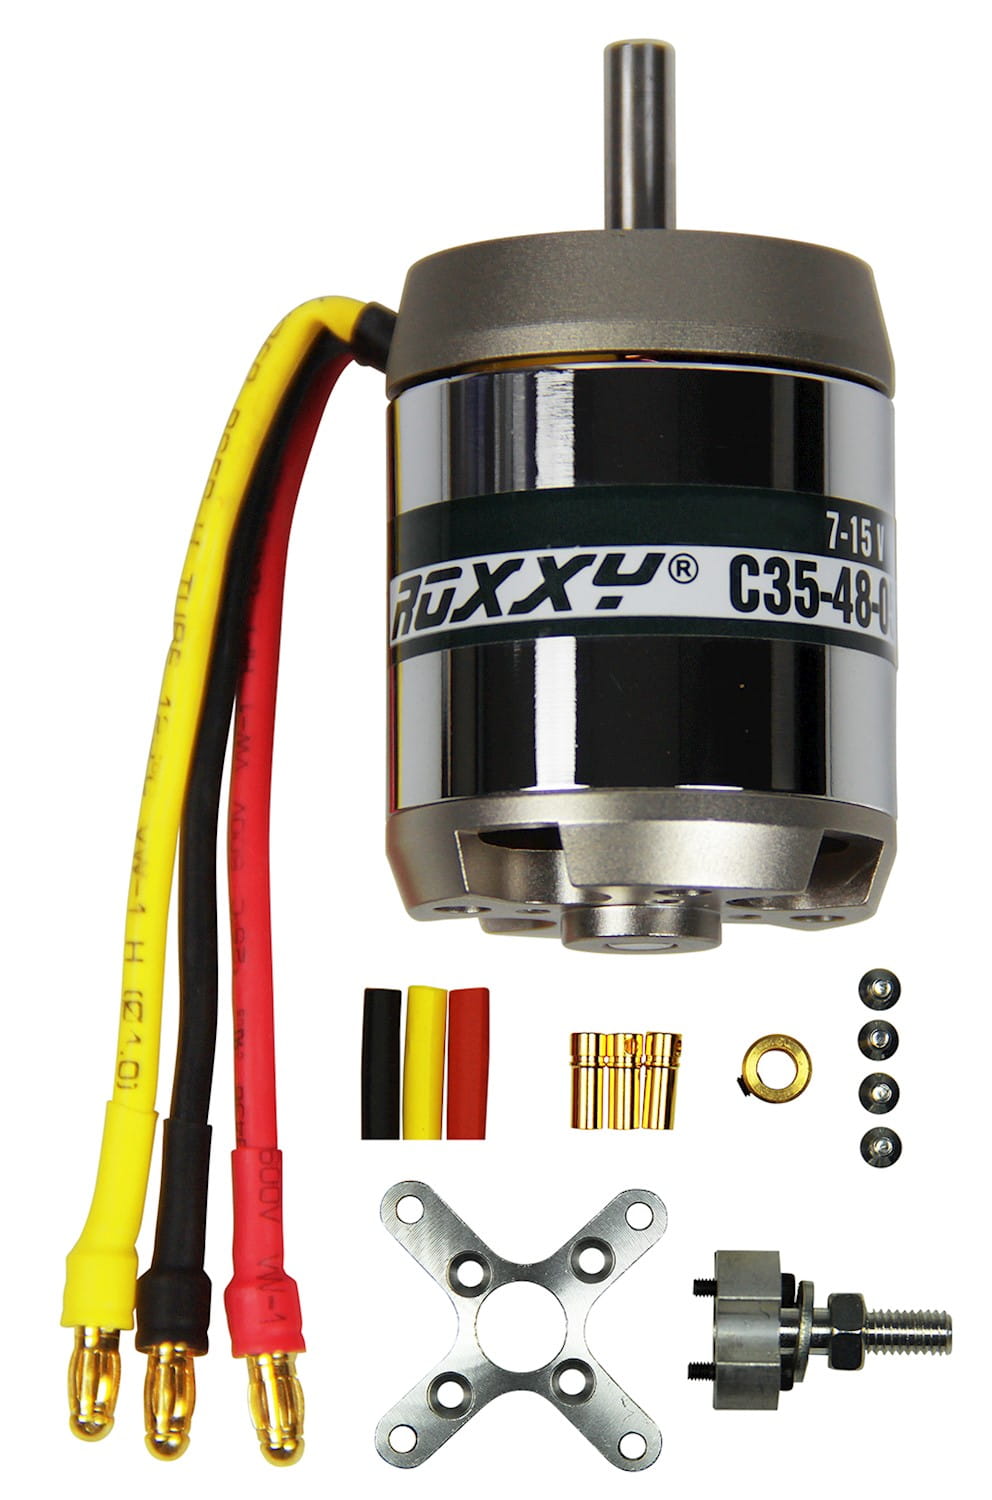 Multiplex ROXXY Brushless Motor BL Outrunner C35-48-1300kV